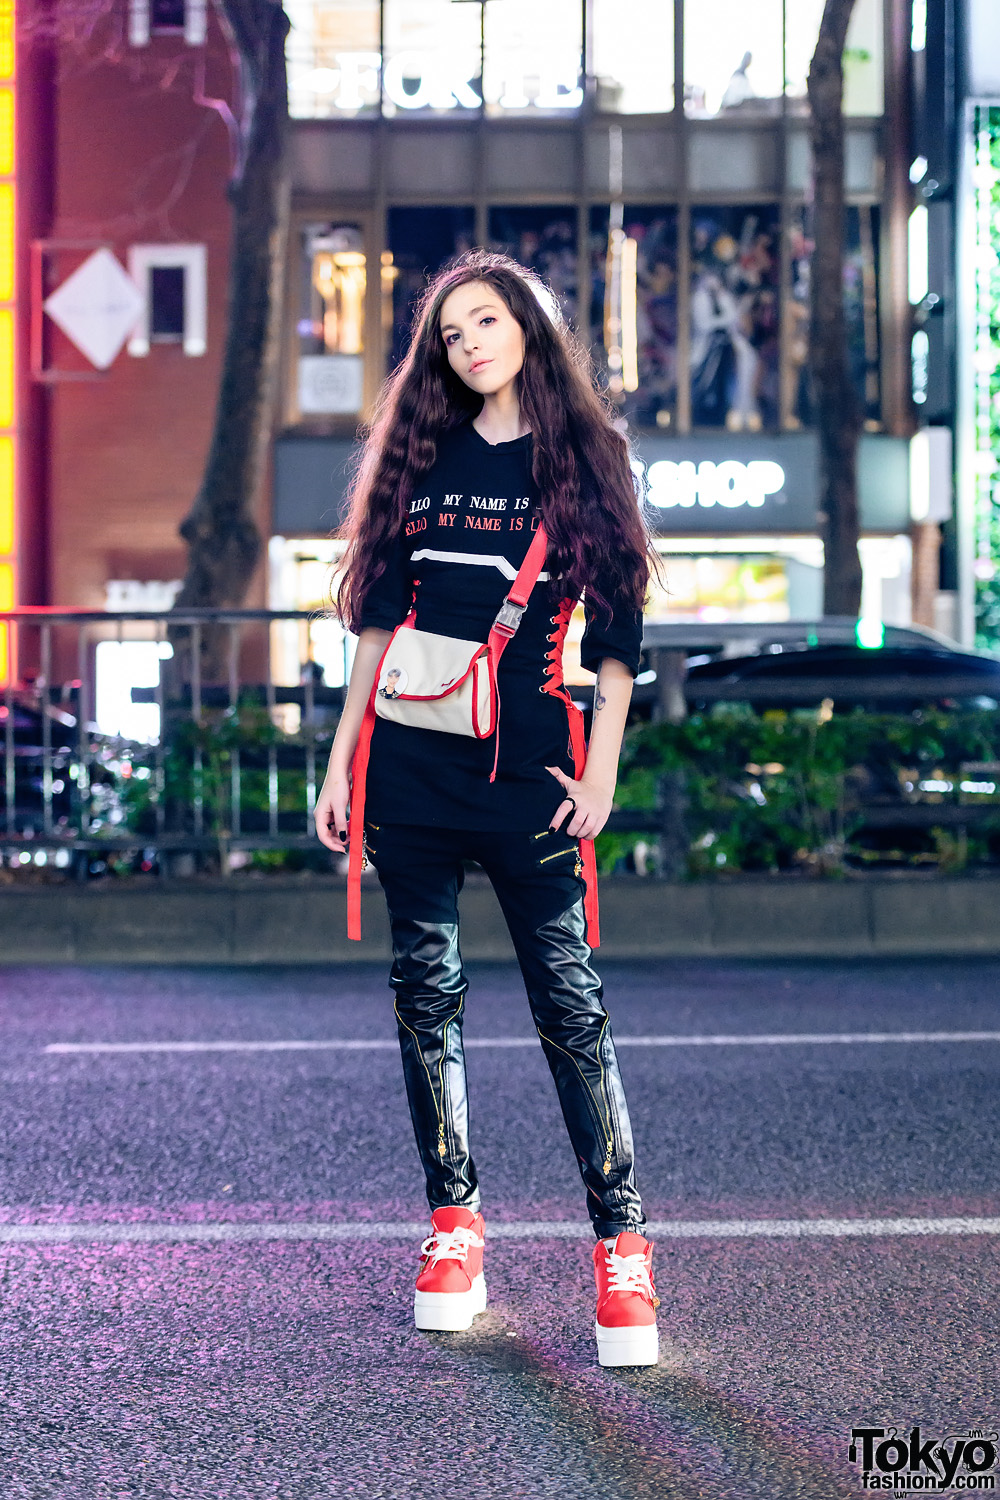 Black & Red Streetwear Look in Harajuku w/ Long Curly Hair, 3/4 Sleeve Corset Top, Skinny Leather Pants, Crossbody Bag & Platform Sneakers